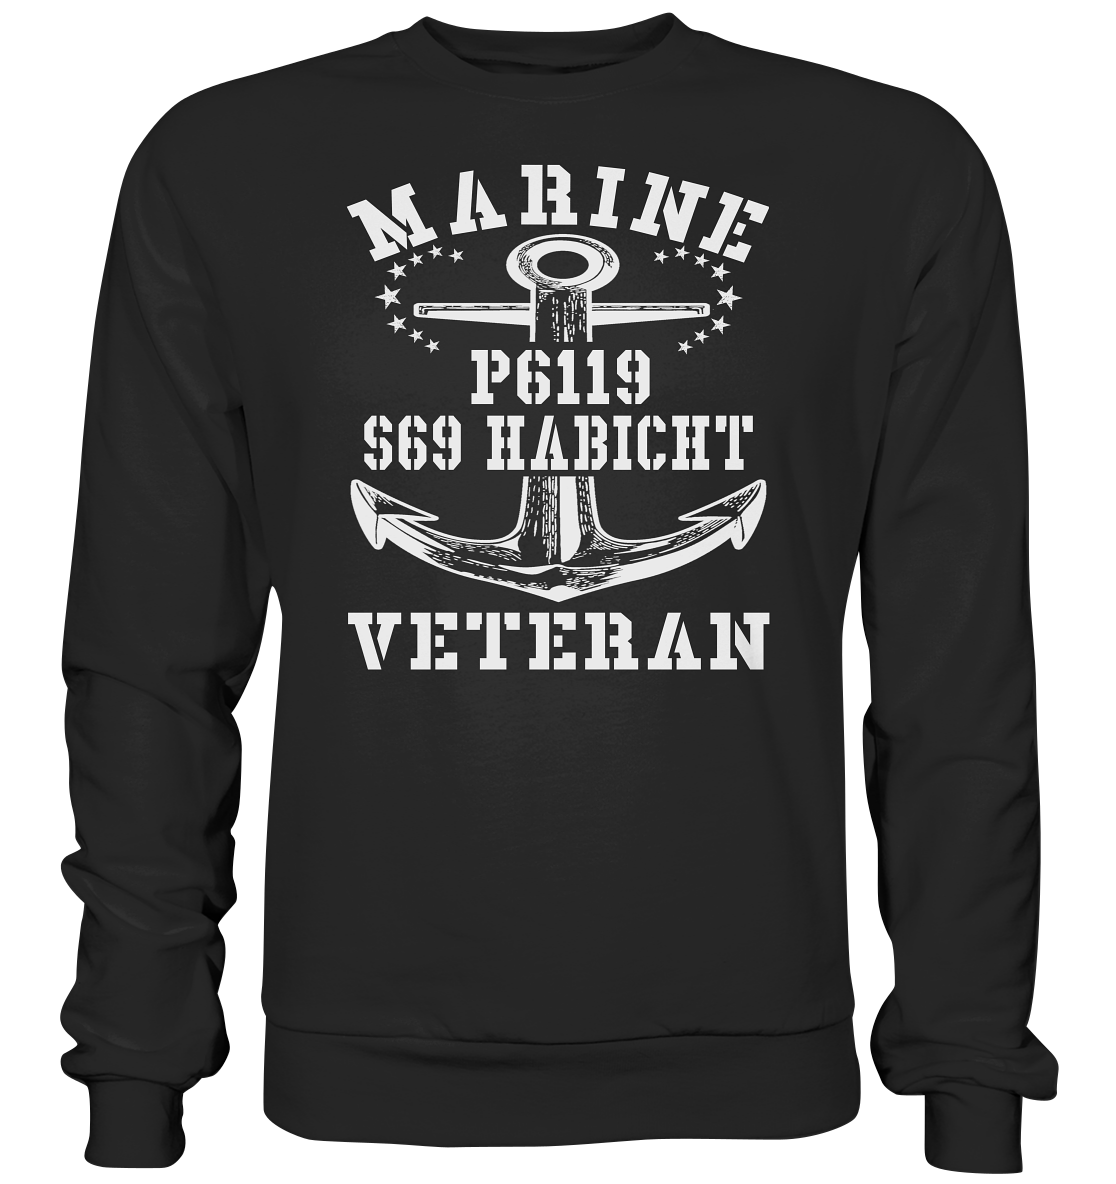 FK-Schnellboot P6119 HABICHT Marine Veteran - Premium Sweatshirt